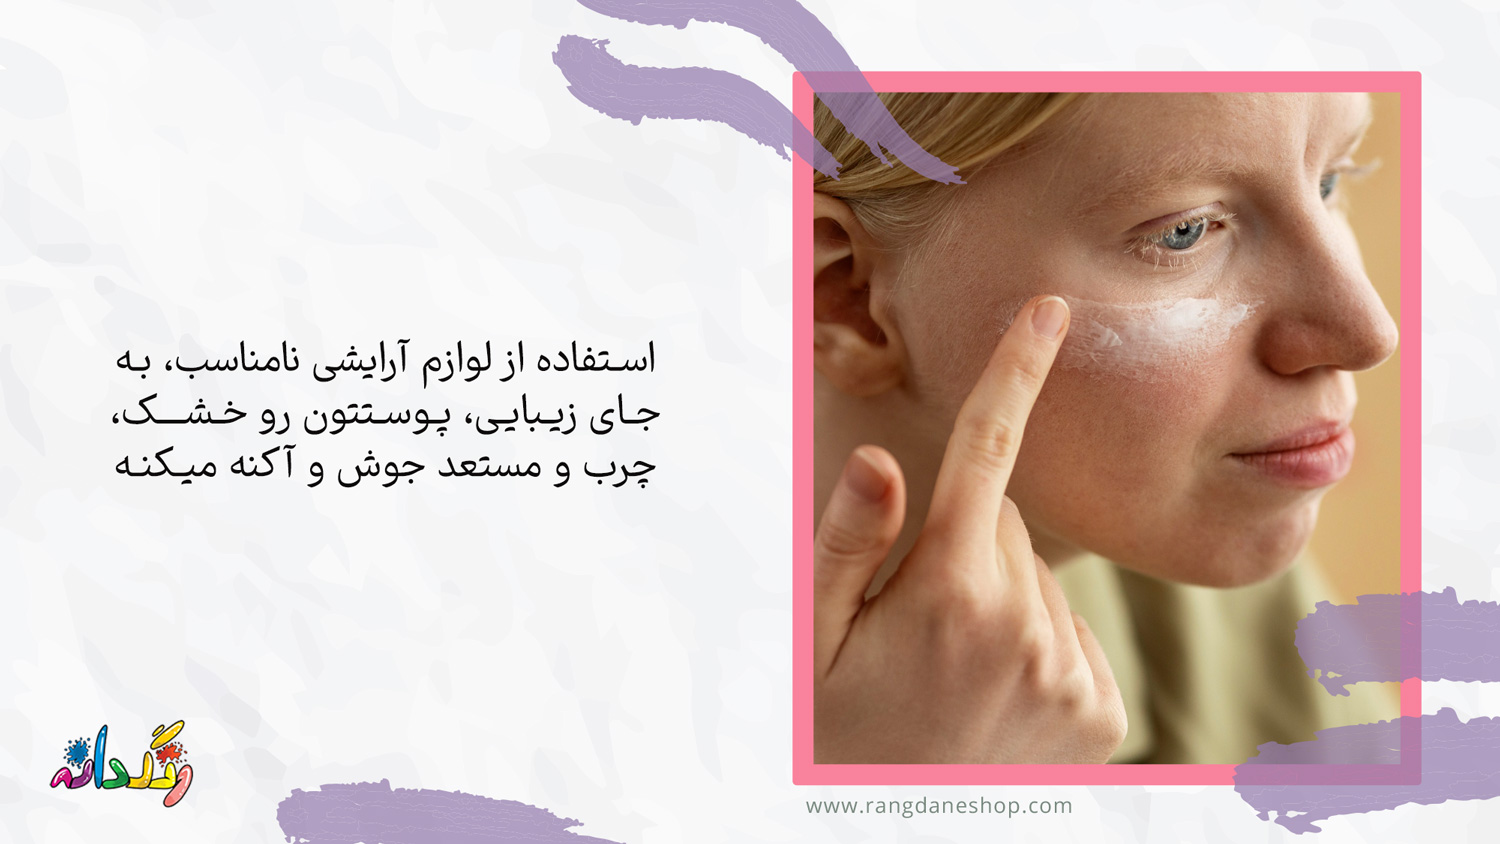 چرب یا خشک شدن بیش از حد پوست یکی از عوارض استفاده مداوم از لوازم ارایشی بر روی پوست